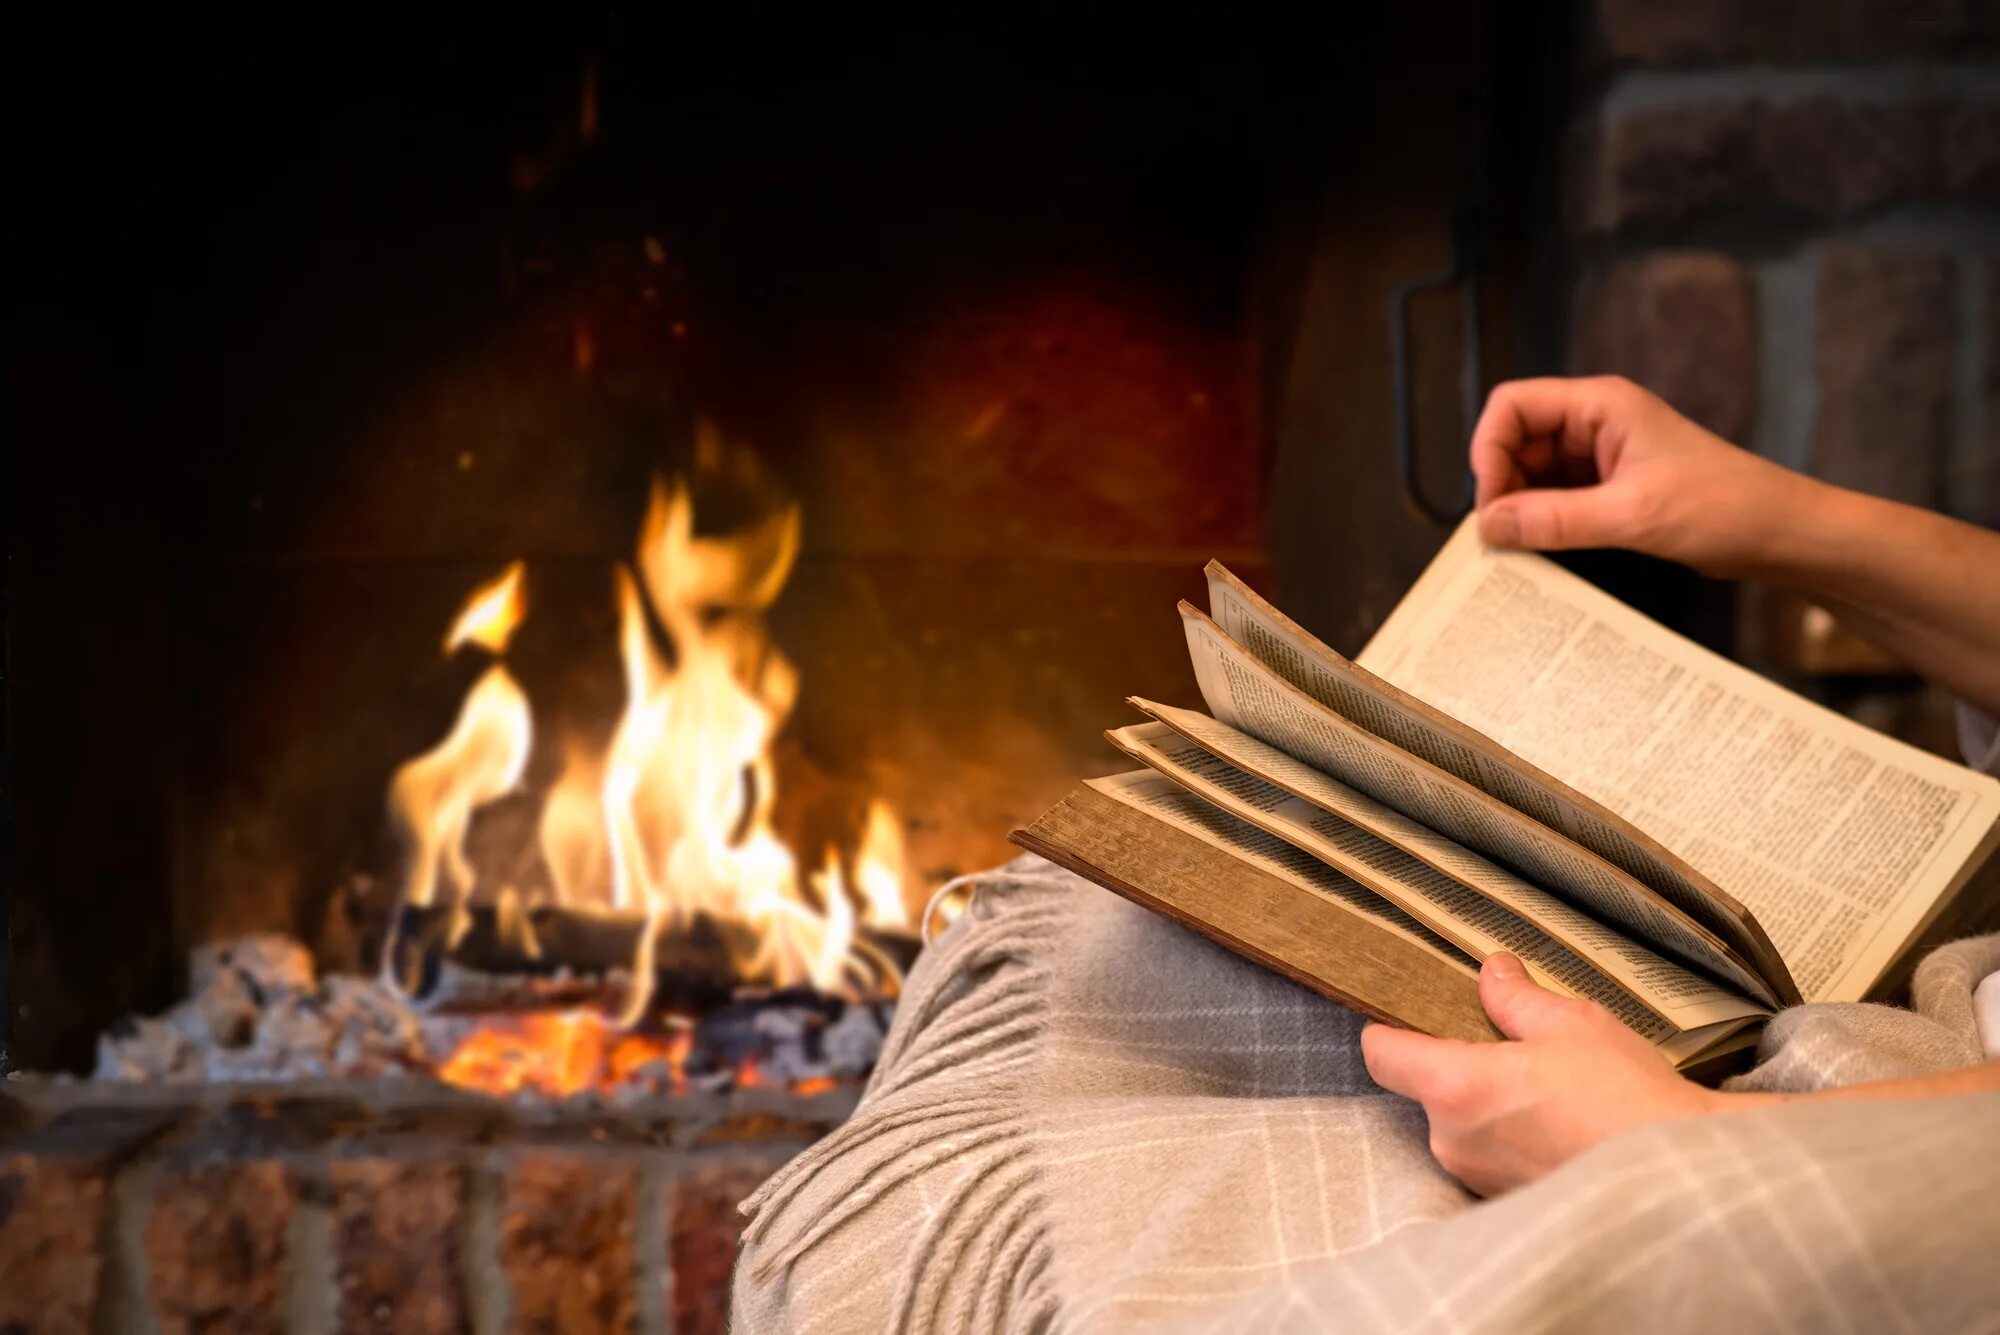 Читать бай. Чтение у камина. С книгой у камина. Вечер с книгой. Чтение книги у камина.